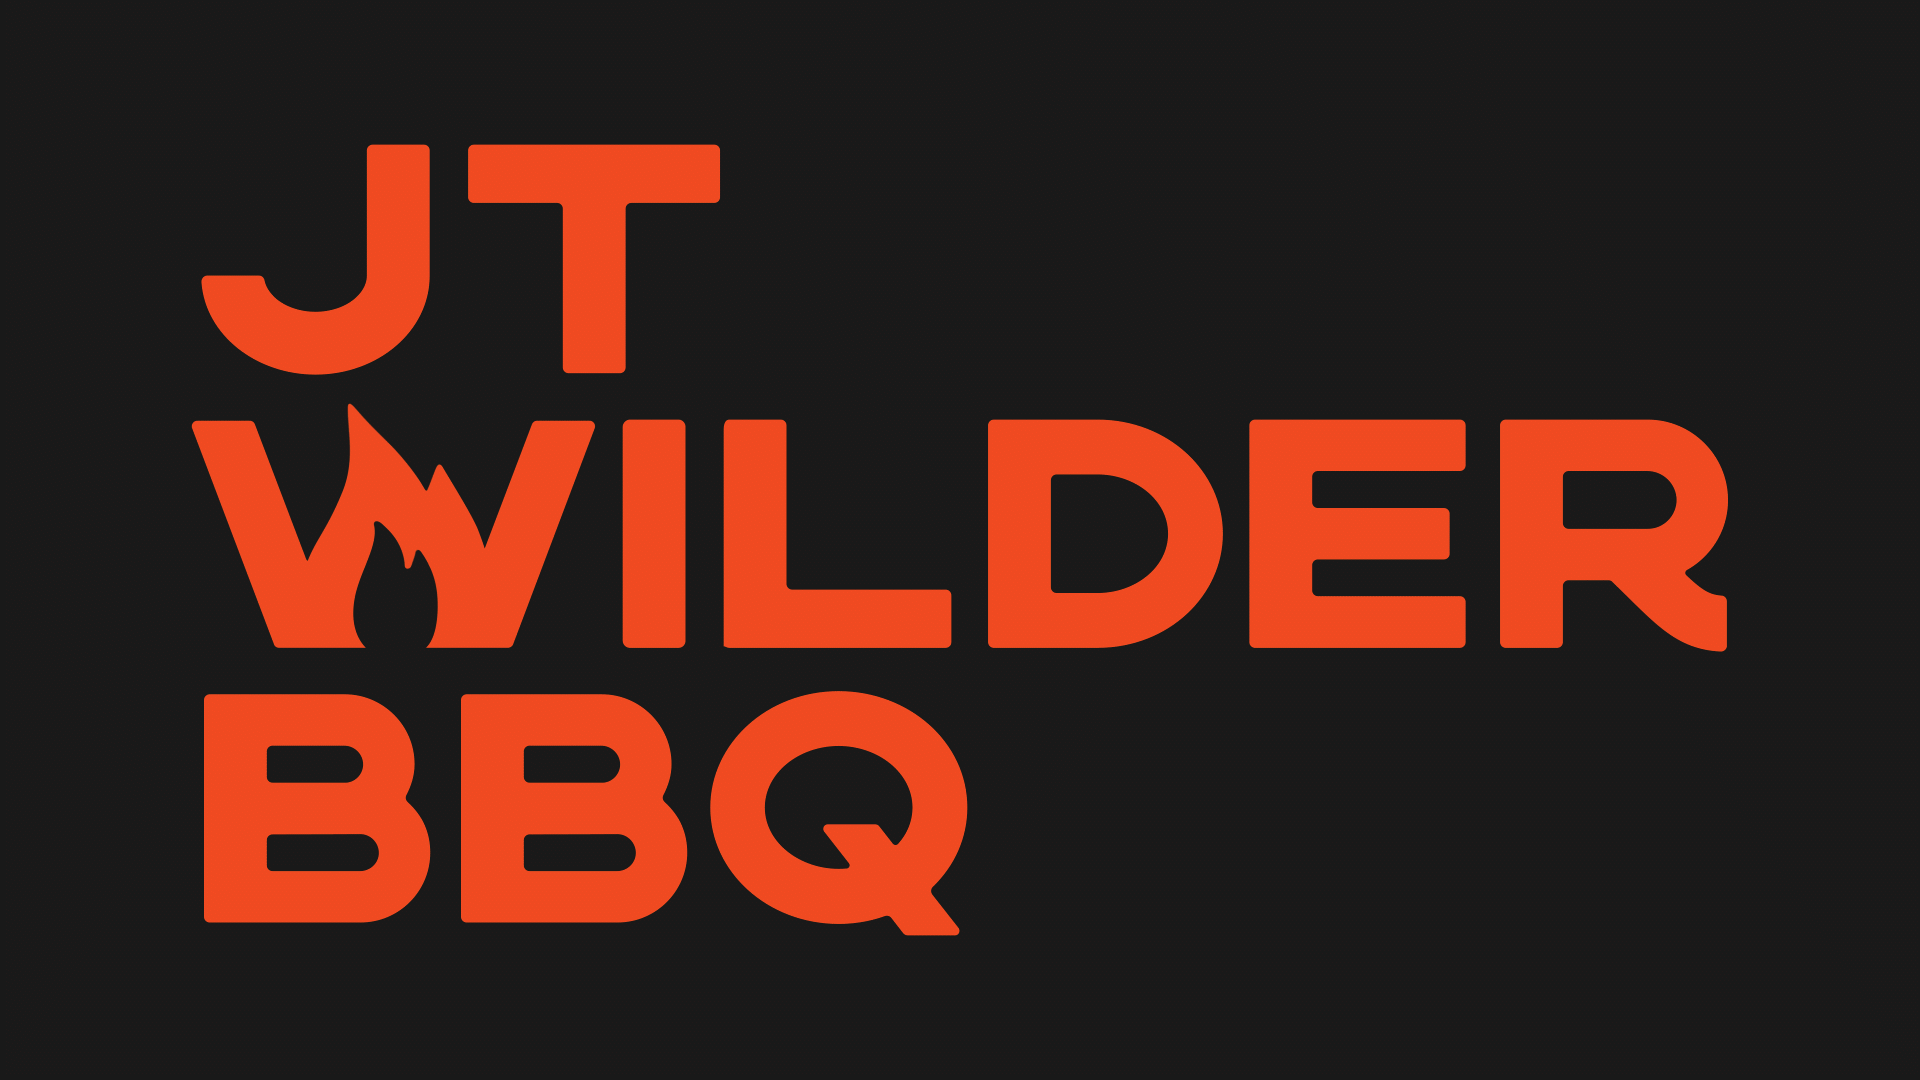 JT Wilder BBQ